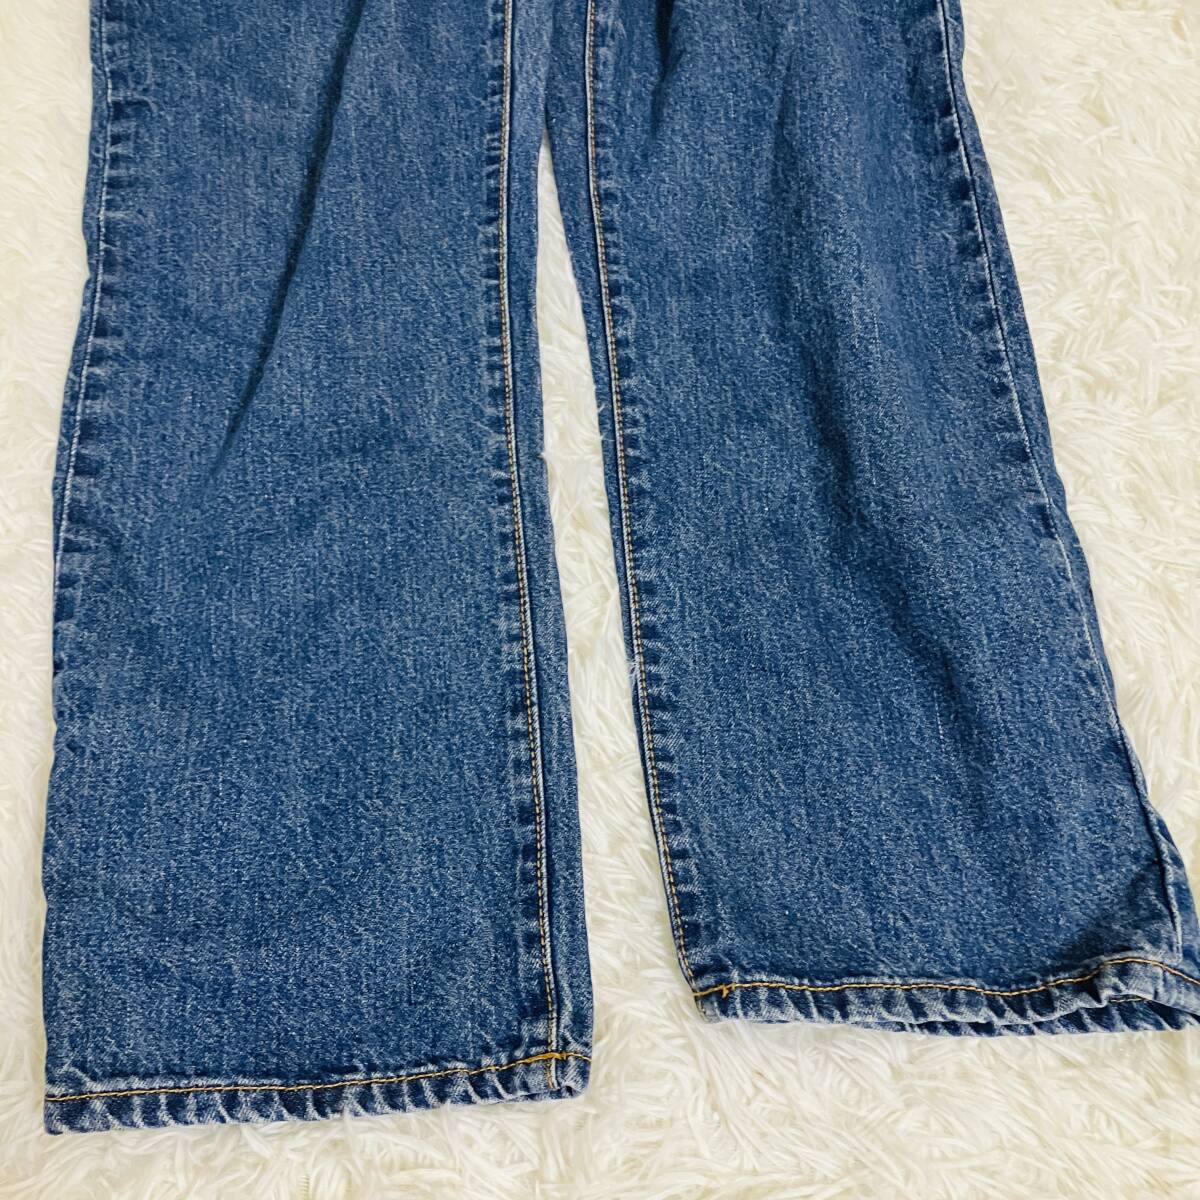 w90 Authentic  женский   джинсы    длинный    повседневный   синий  （ синий ）  хлопок    б/у   Denim    прямой   